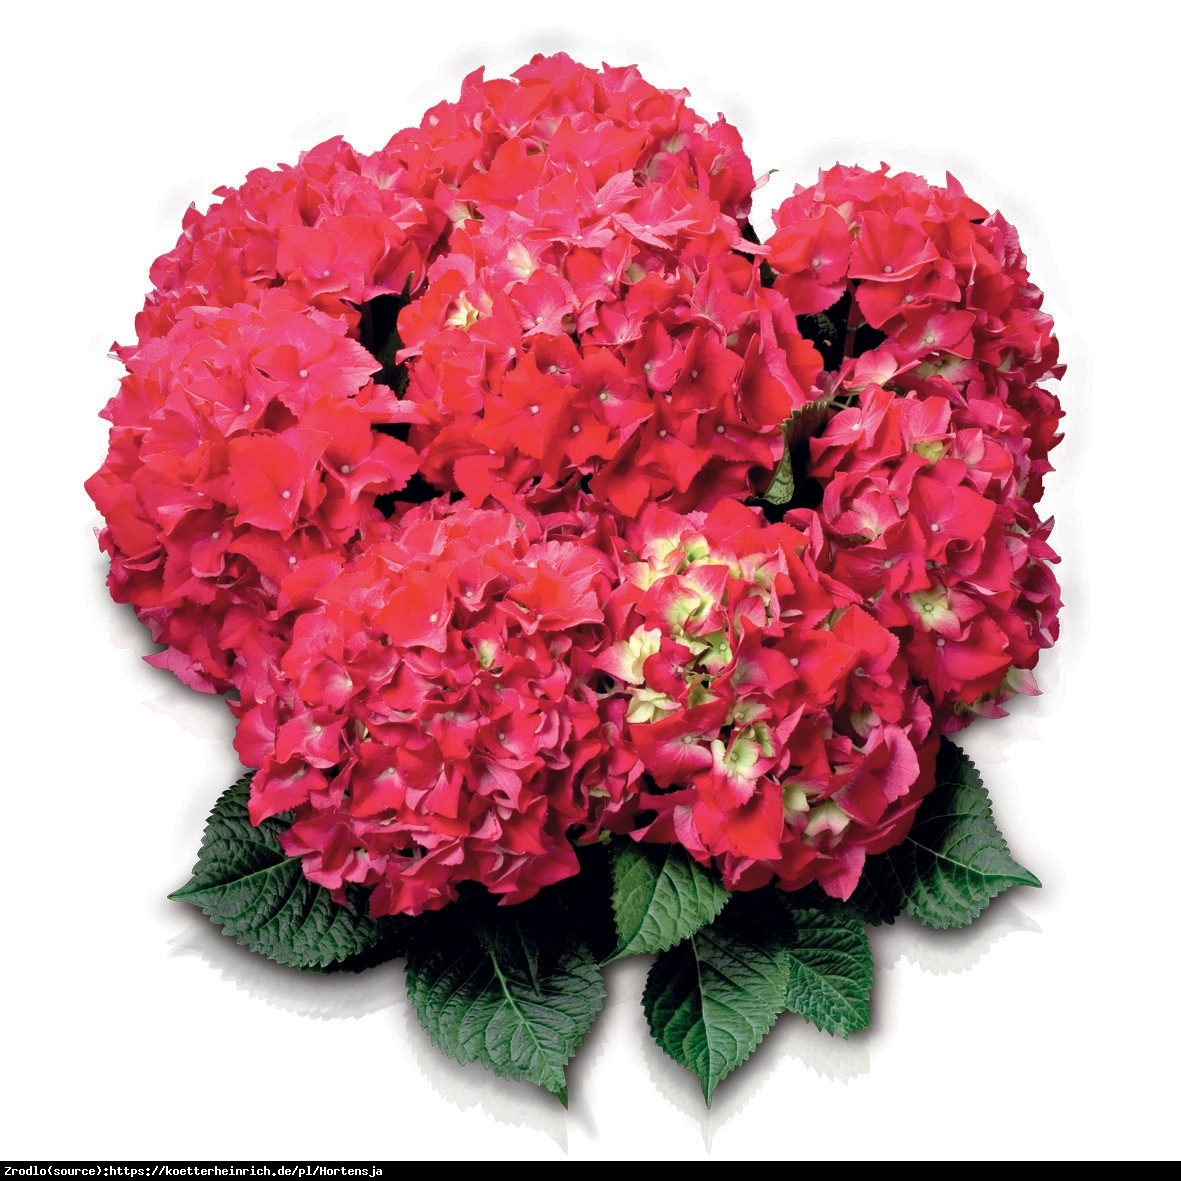 Hortensja ogrodowa Red Beauty  - Hydrangea macrophylla Red Beauty 